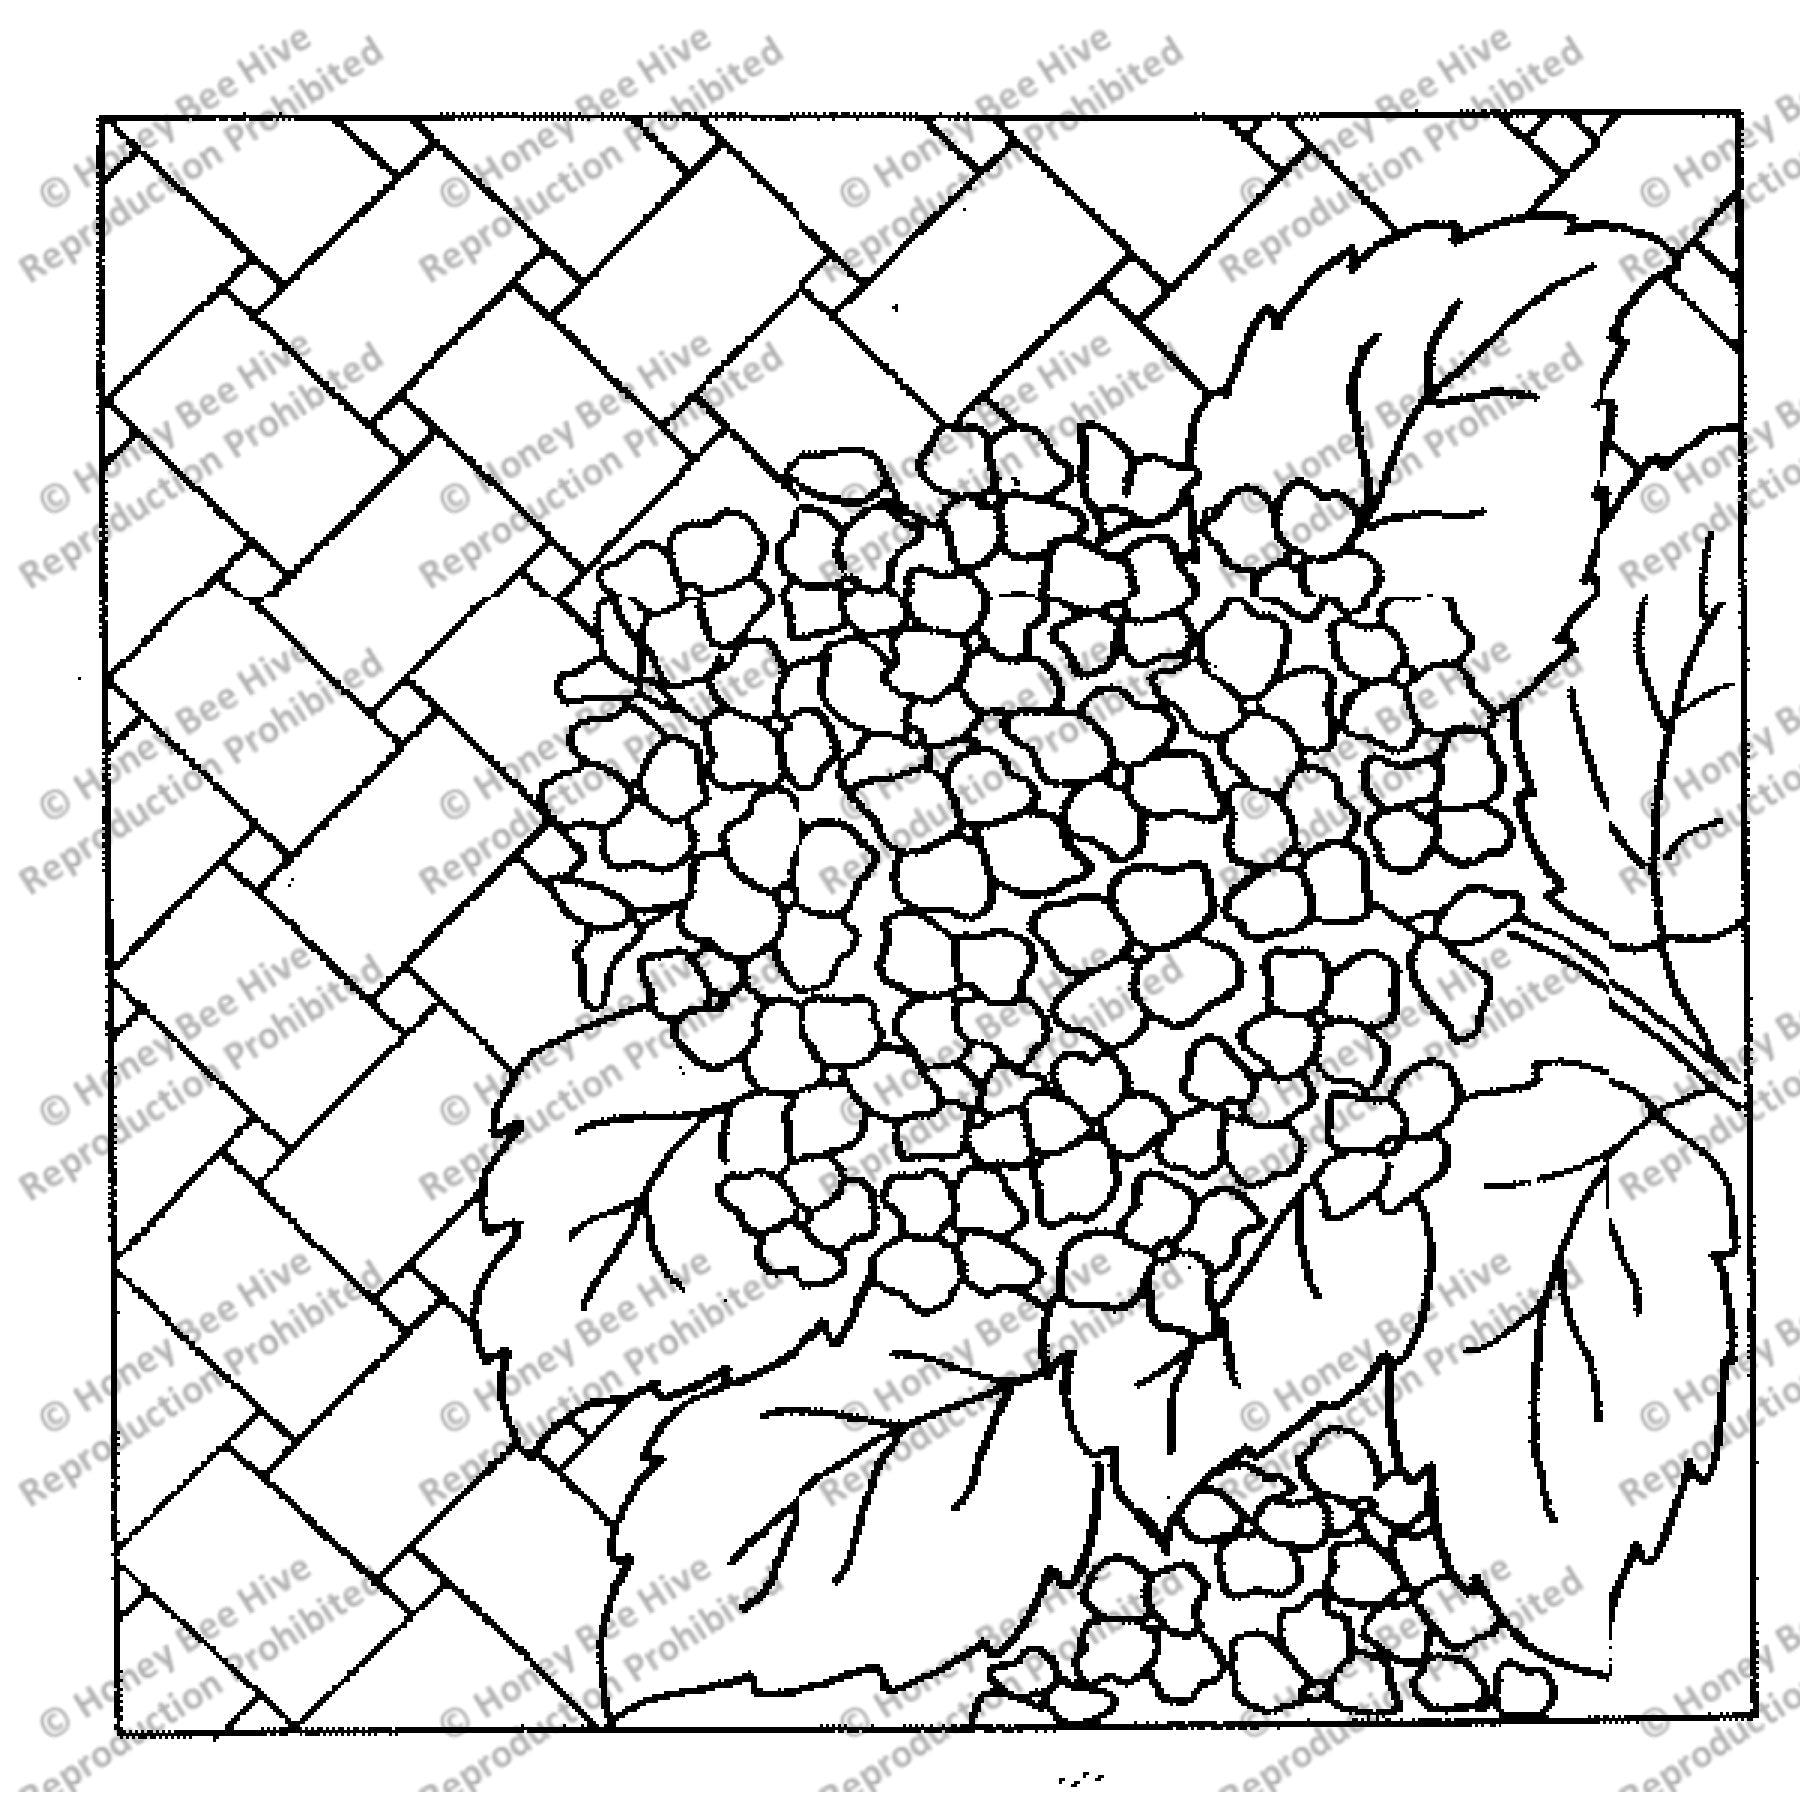 Hydrangea, rug hooking pattern